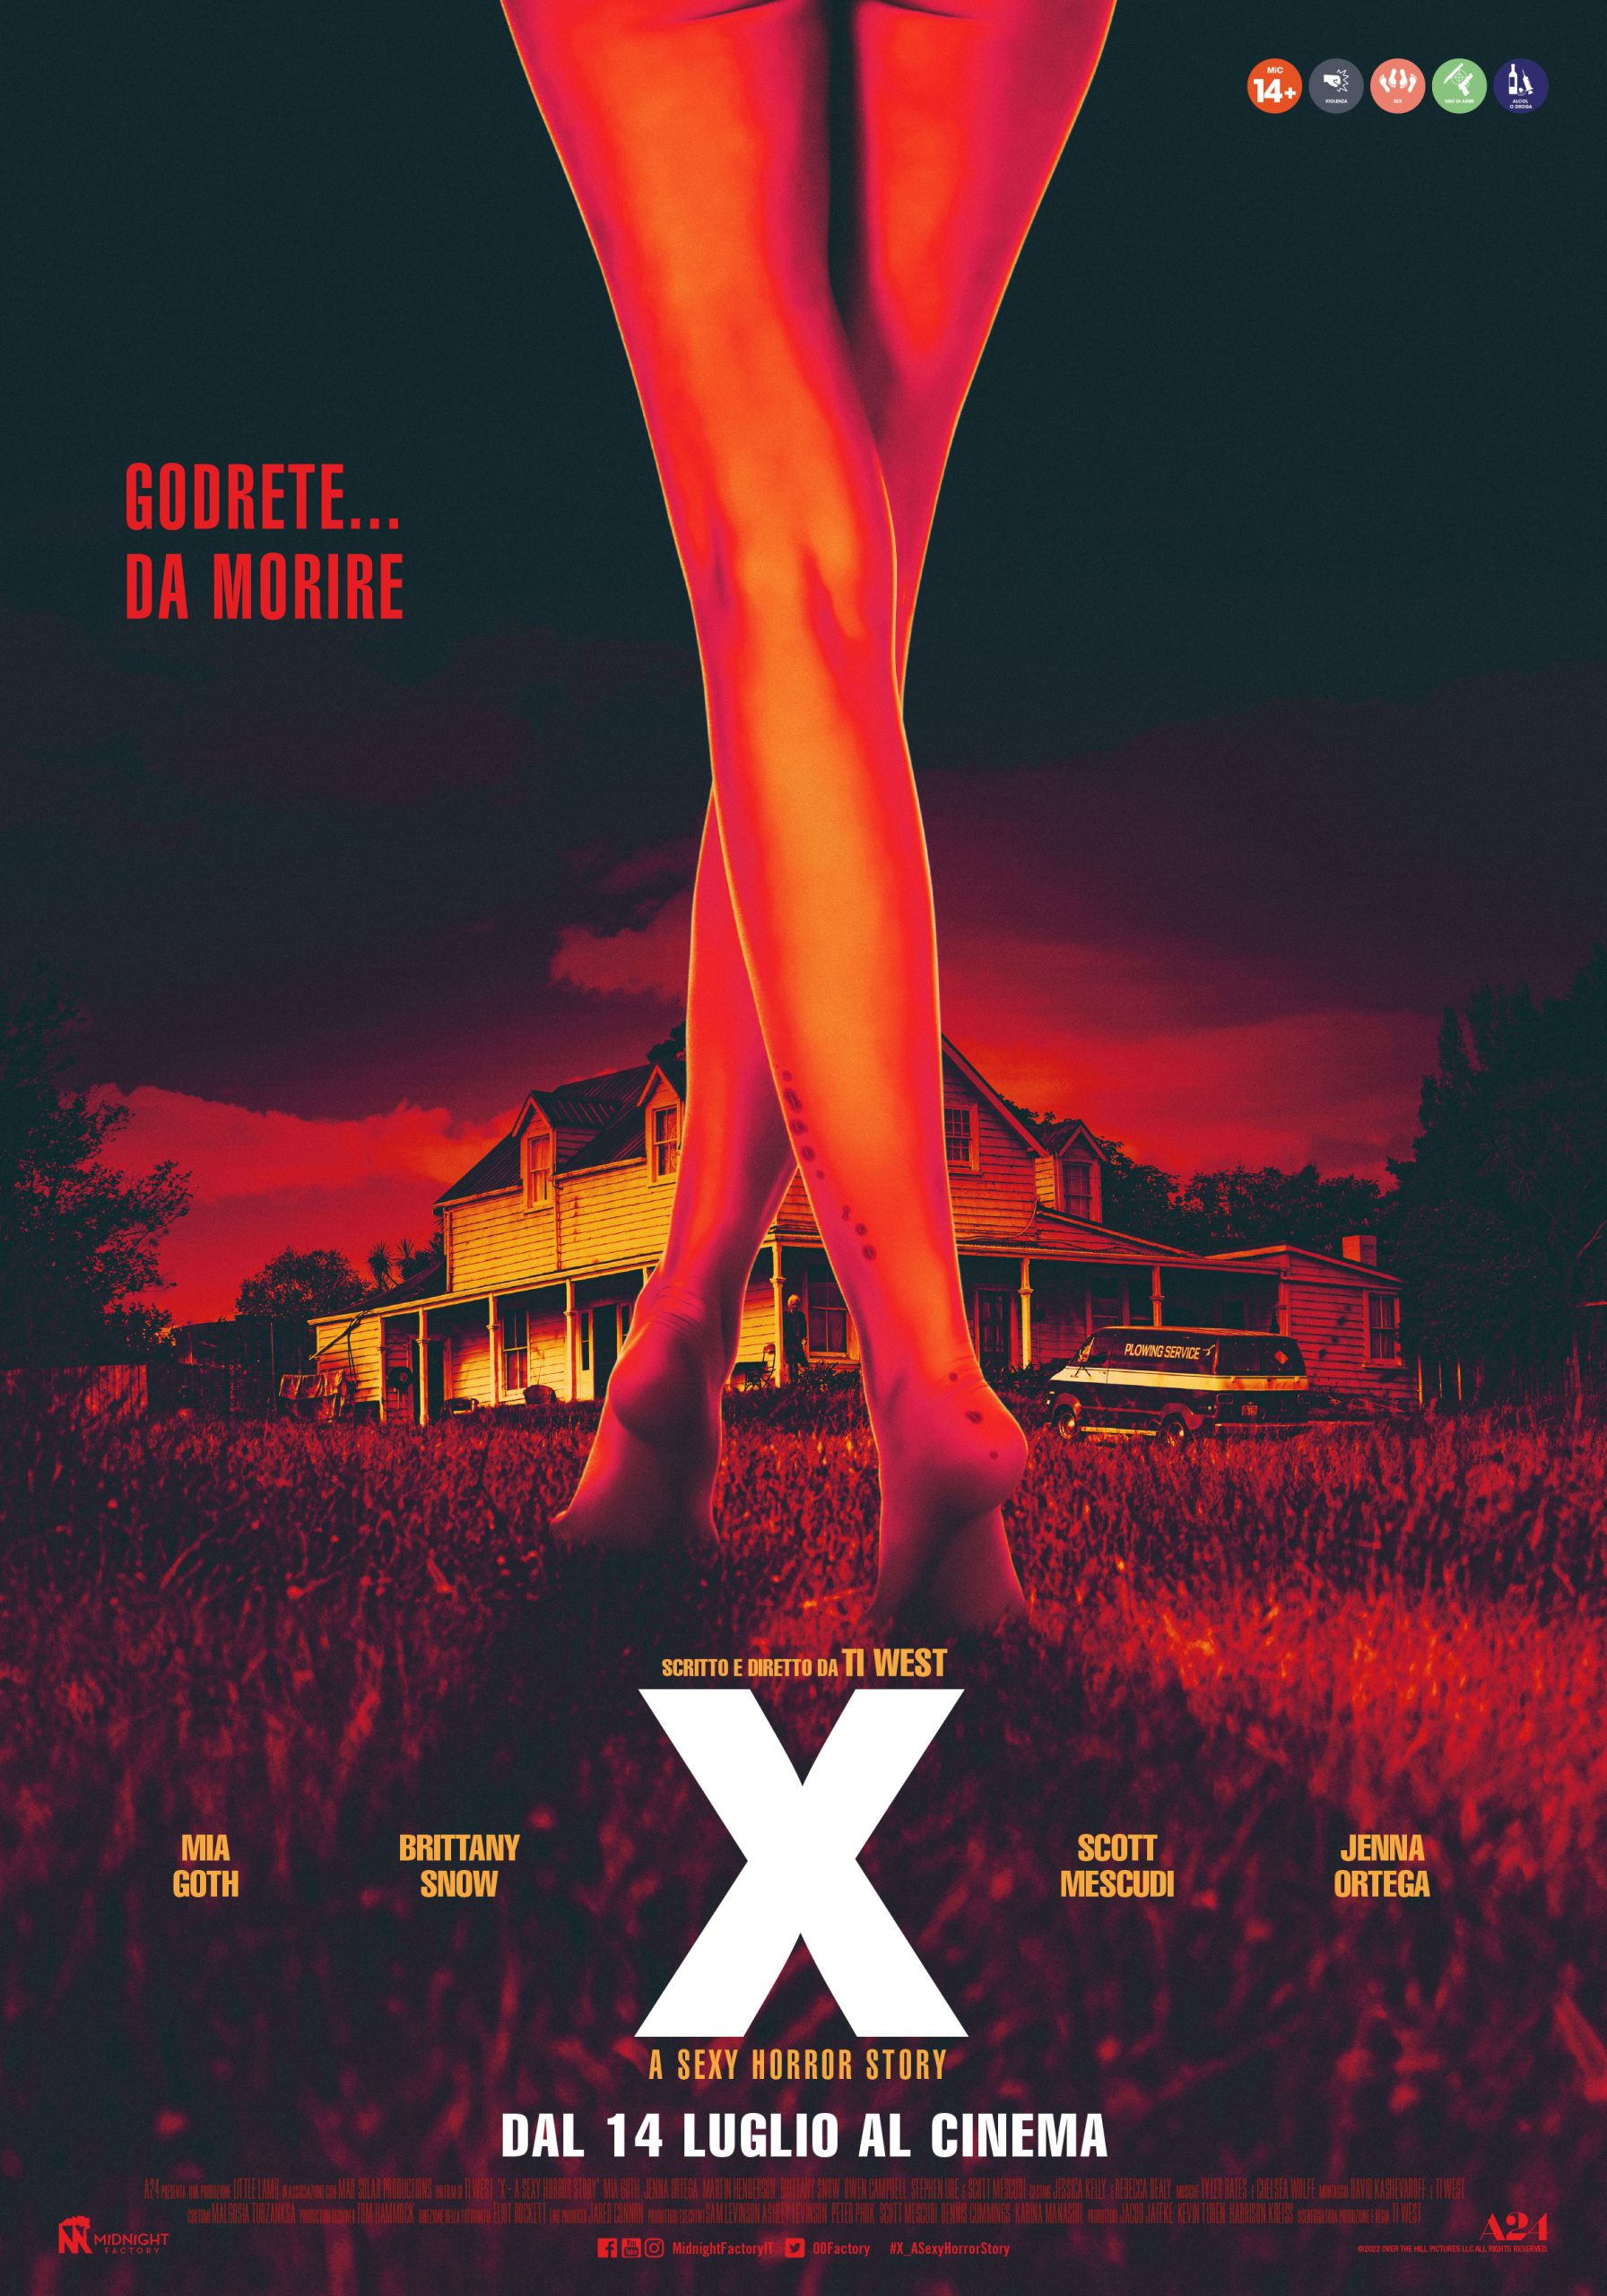 [CLIP] I primi tre minuti di X – A Sexy Horror Story in italiano